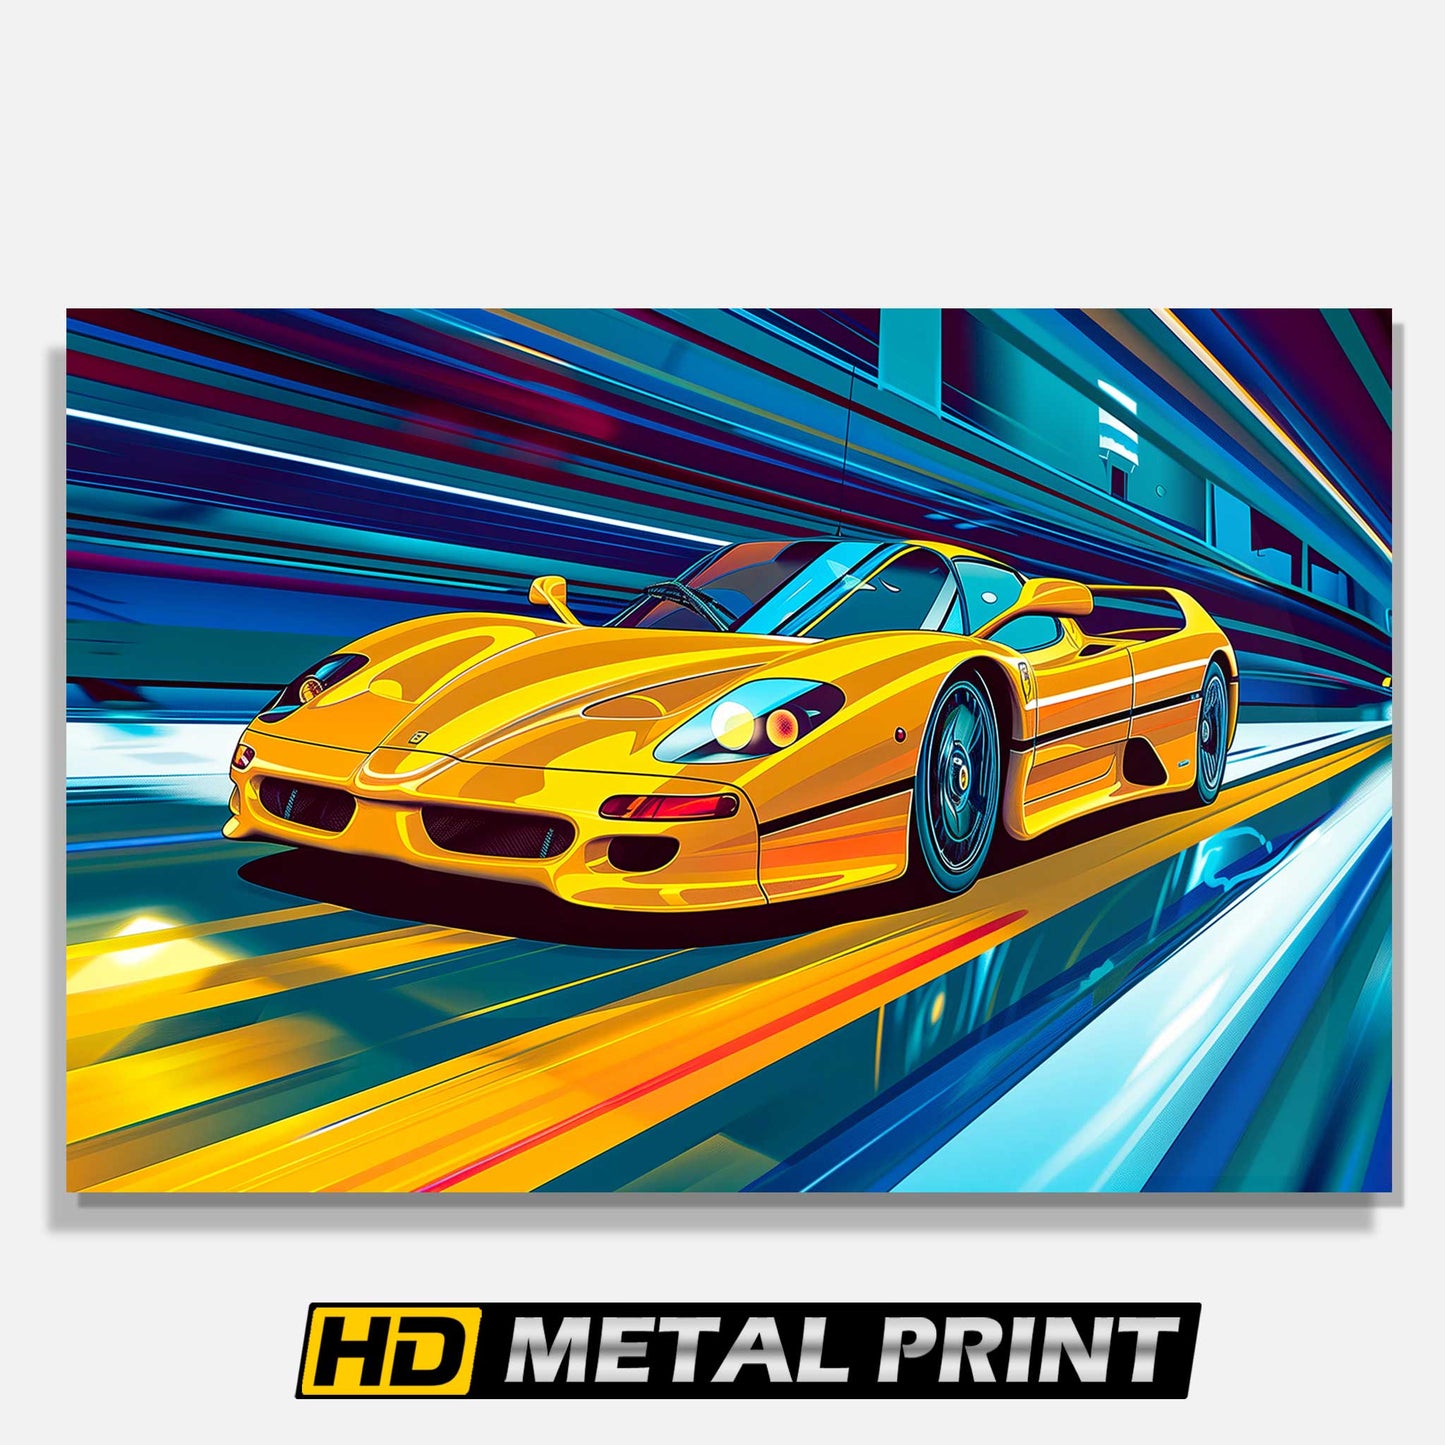 1996 Ferrari F50 Metal Print